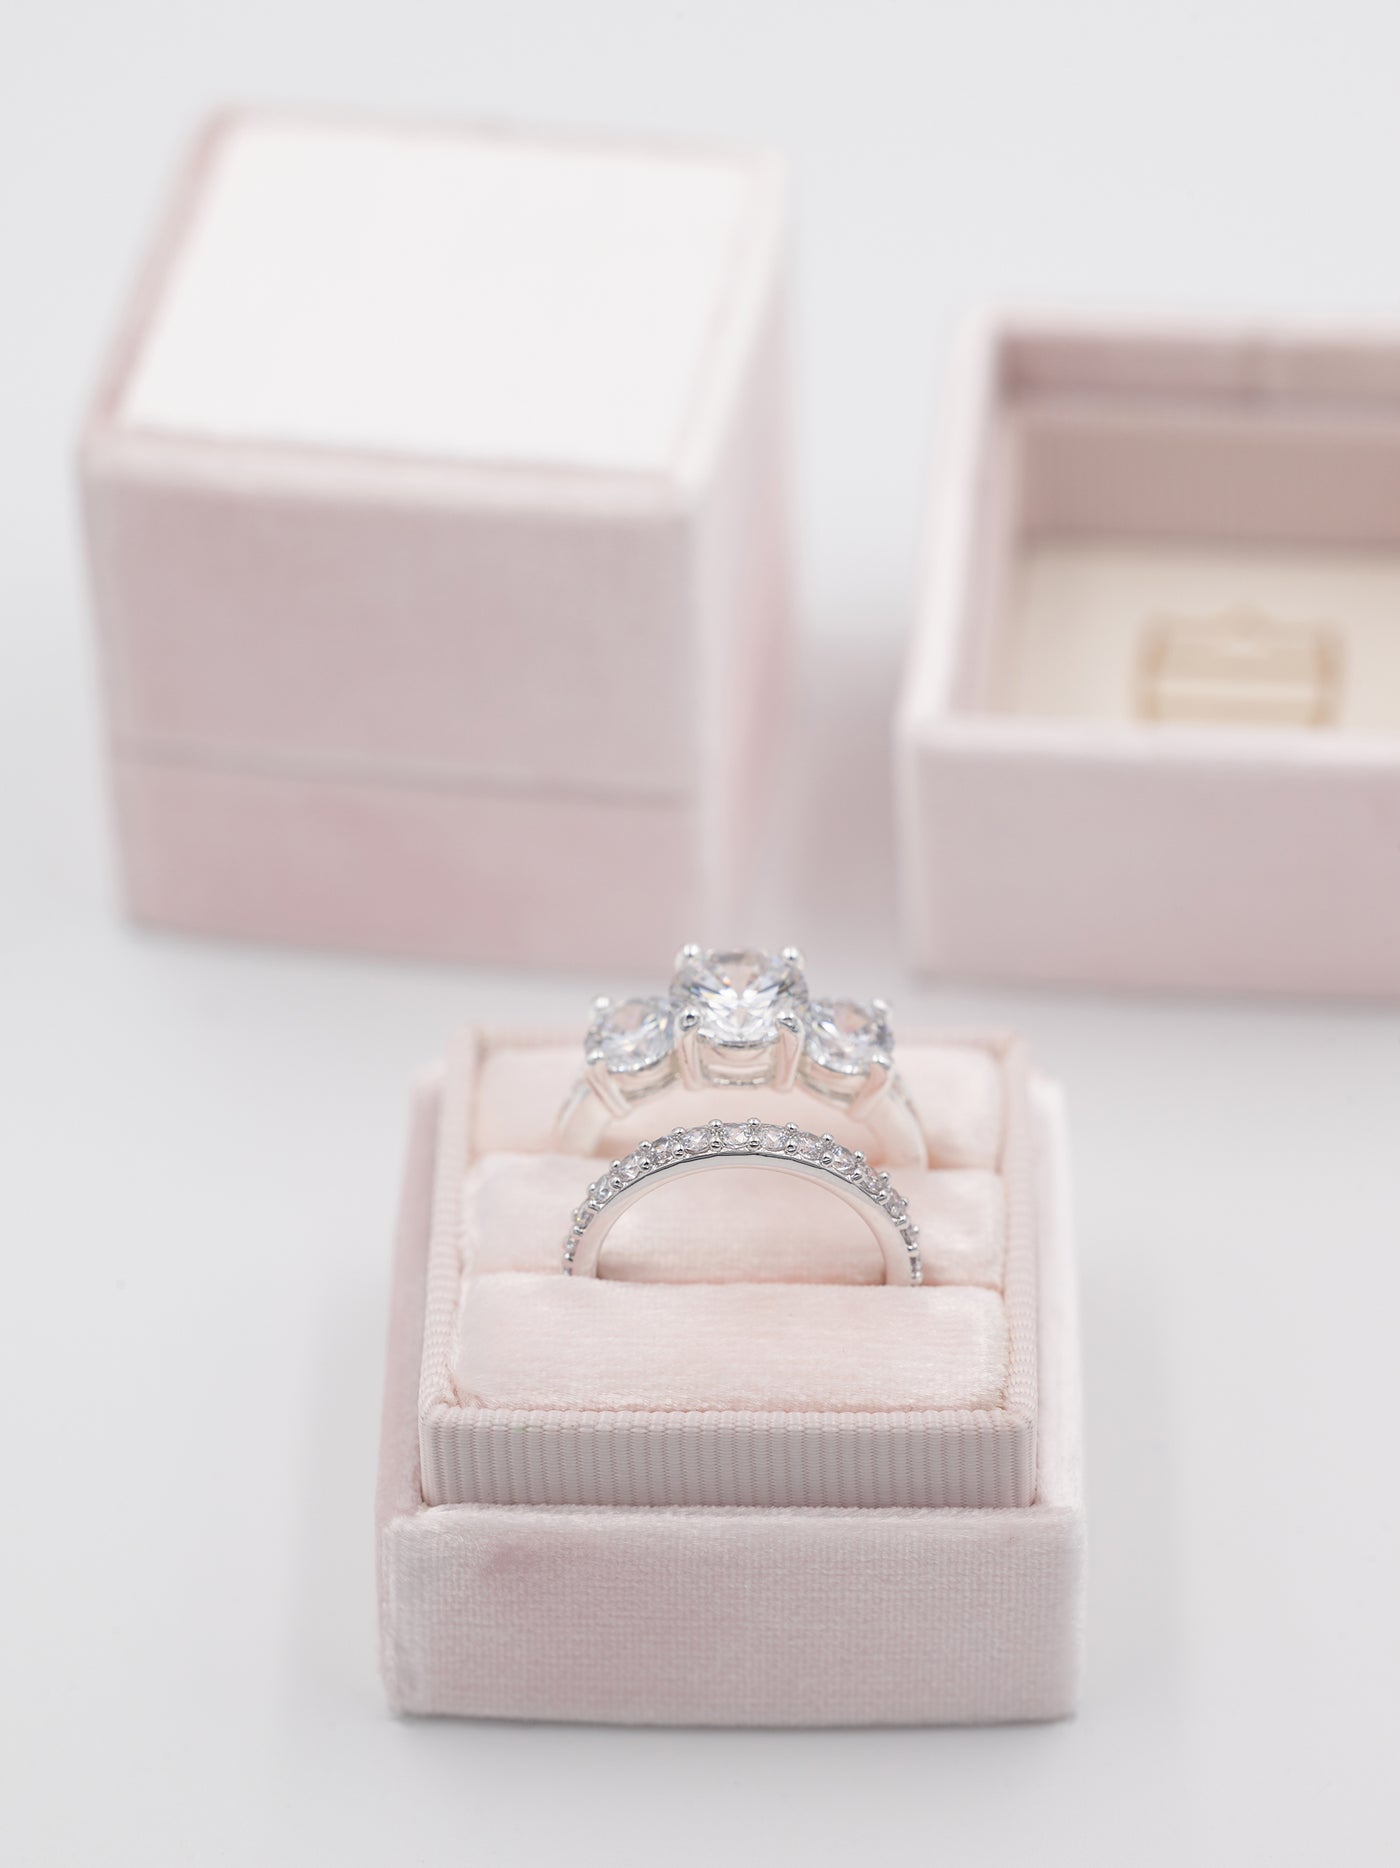 blush pink wedding engagement ring box wedding band